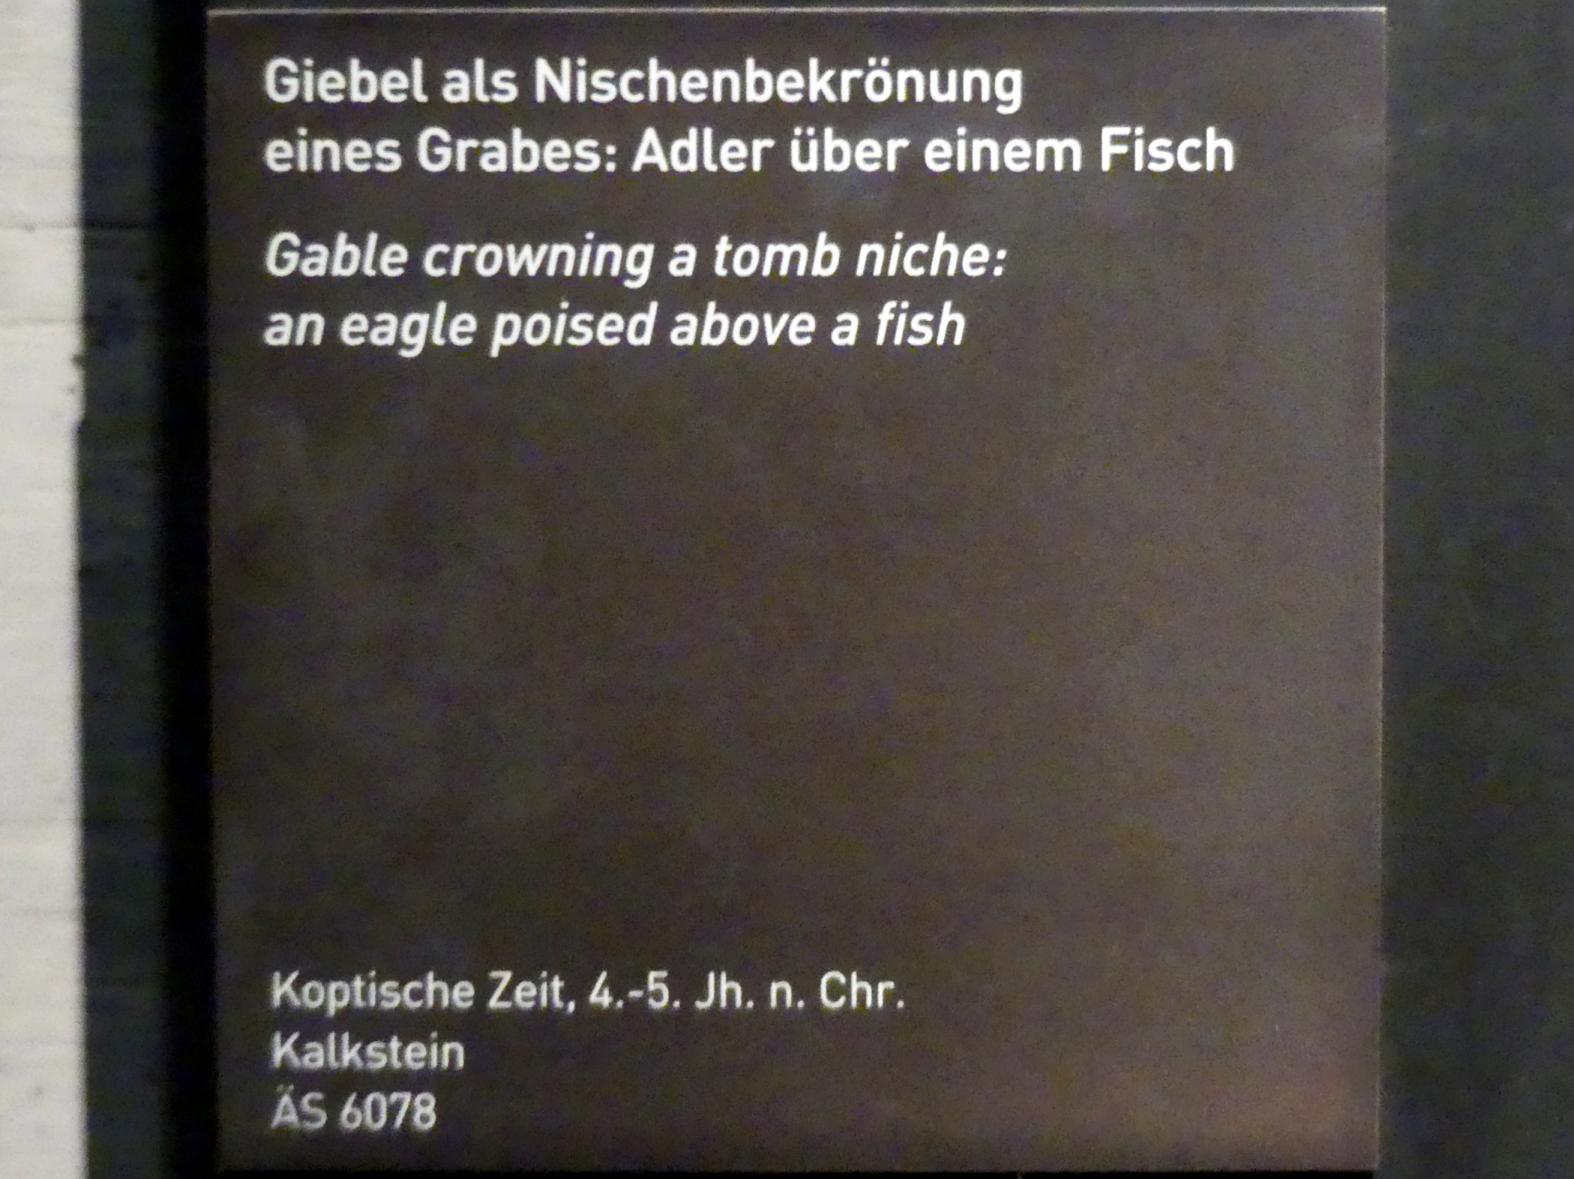 Giebel als Nischenbekrönung eines Grabes: Adler über einem Fisch, Koptische Zeit, 200 - 800, 300 - 500, Bild 2/2